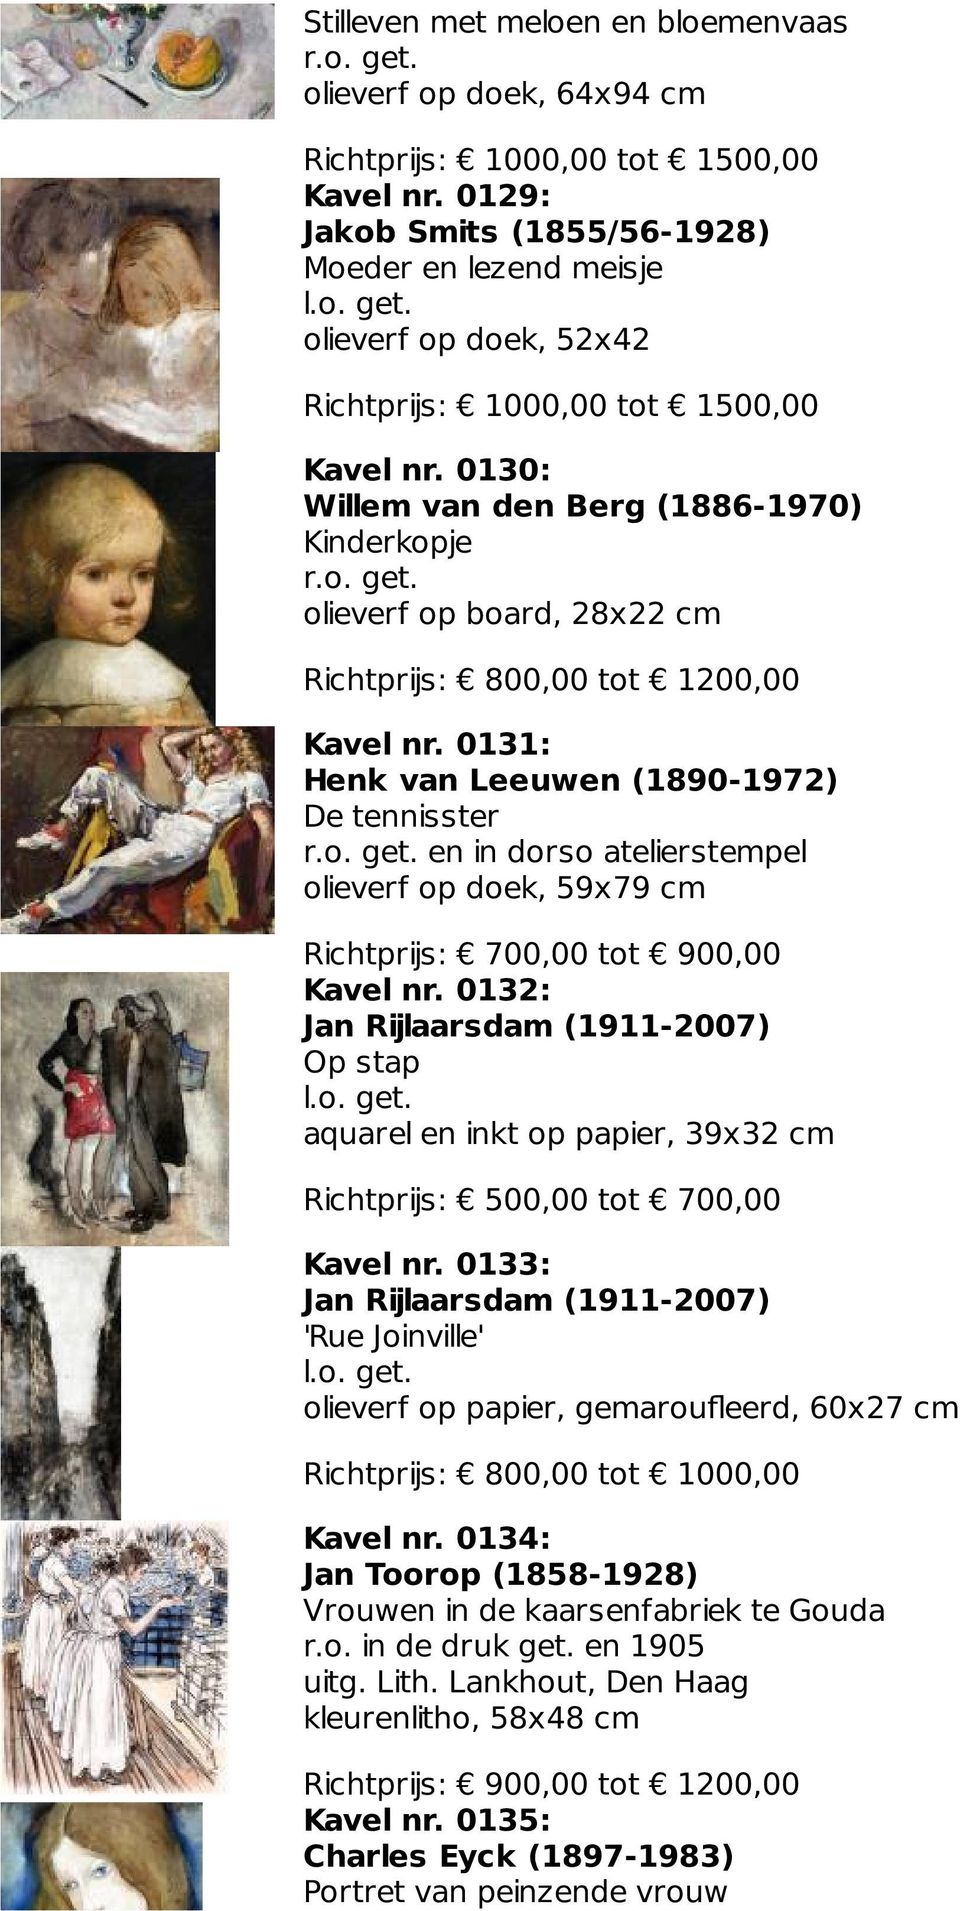 0131: Henk van Leeuwen (1890-1972) De tennisster en in dorso atelierstempel olieverf op doek, 59x79 cm Richtprijs: 700,00 tot 900,00 Kavel nr.